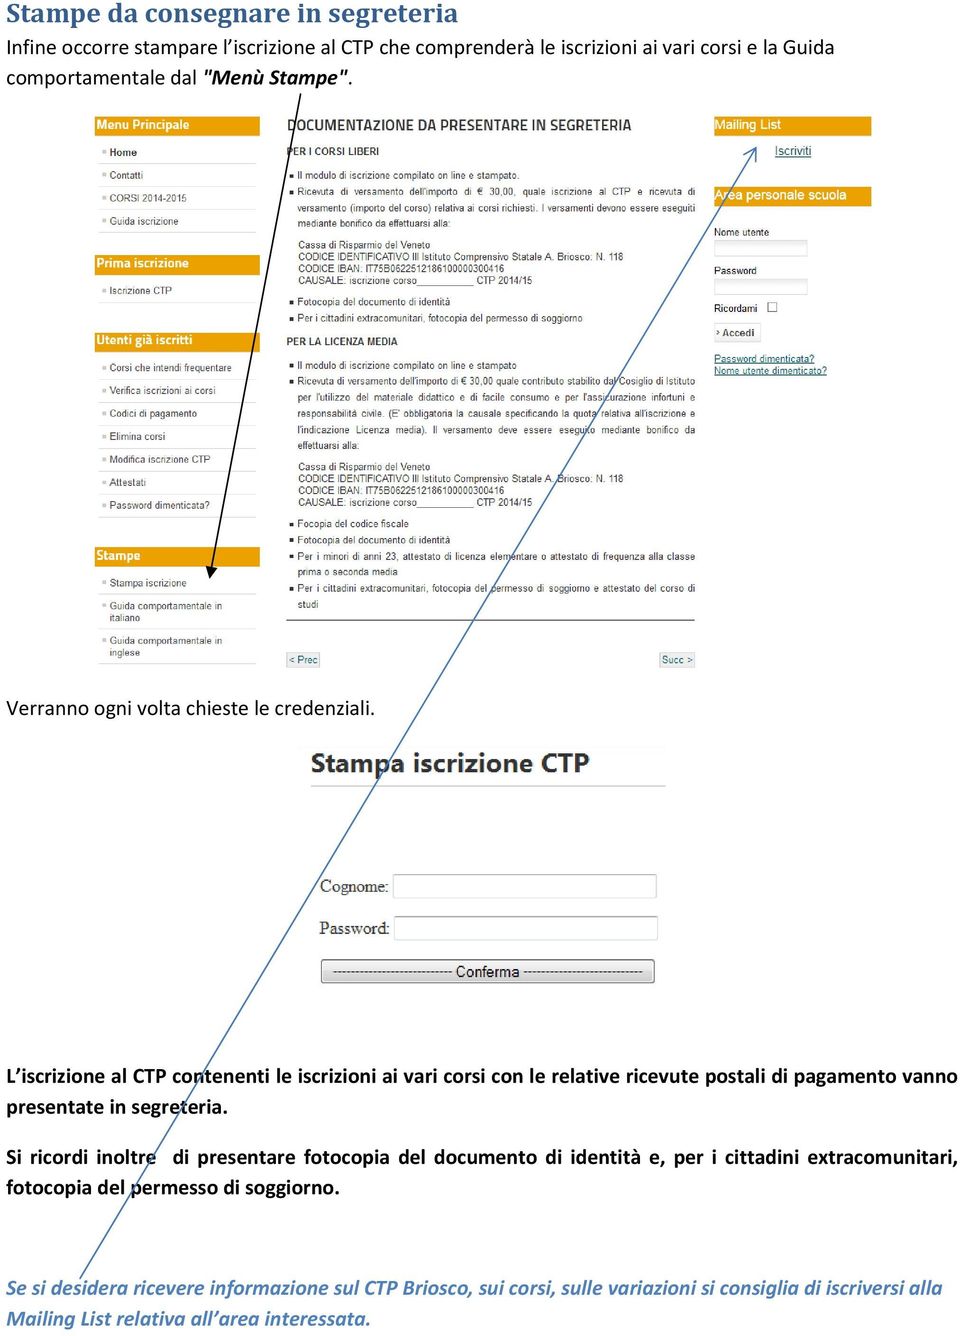 L iscrizione al CTP contenenti le iscrizioni ai vari corsi con le relative ricevute postali di pagamento vanno presentate in segreteria.